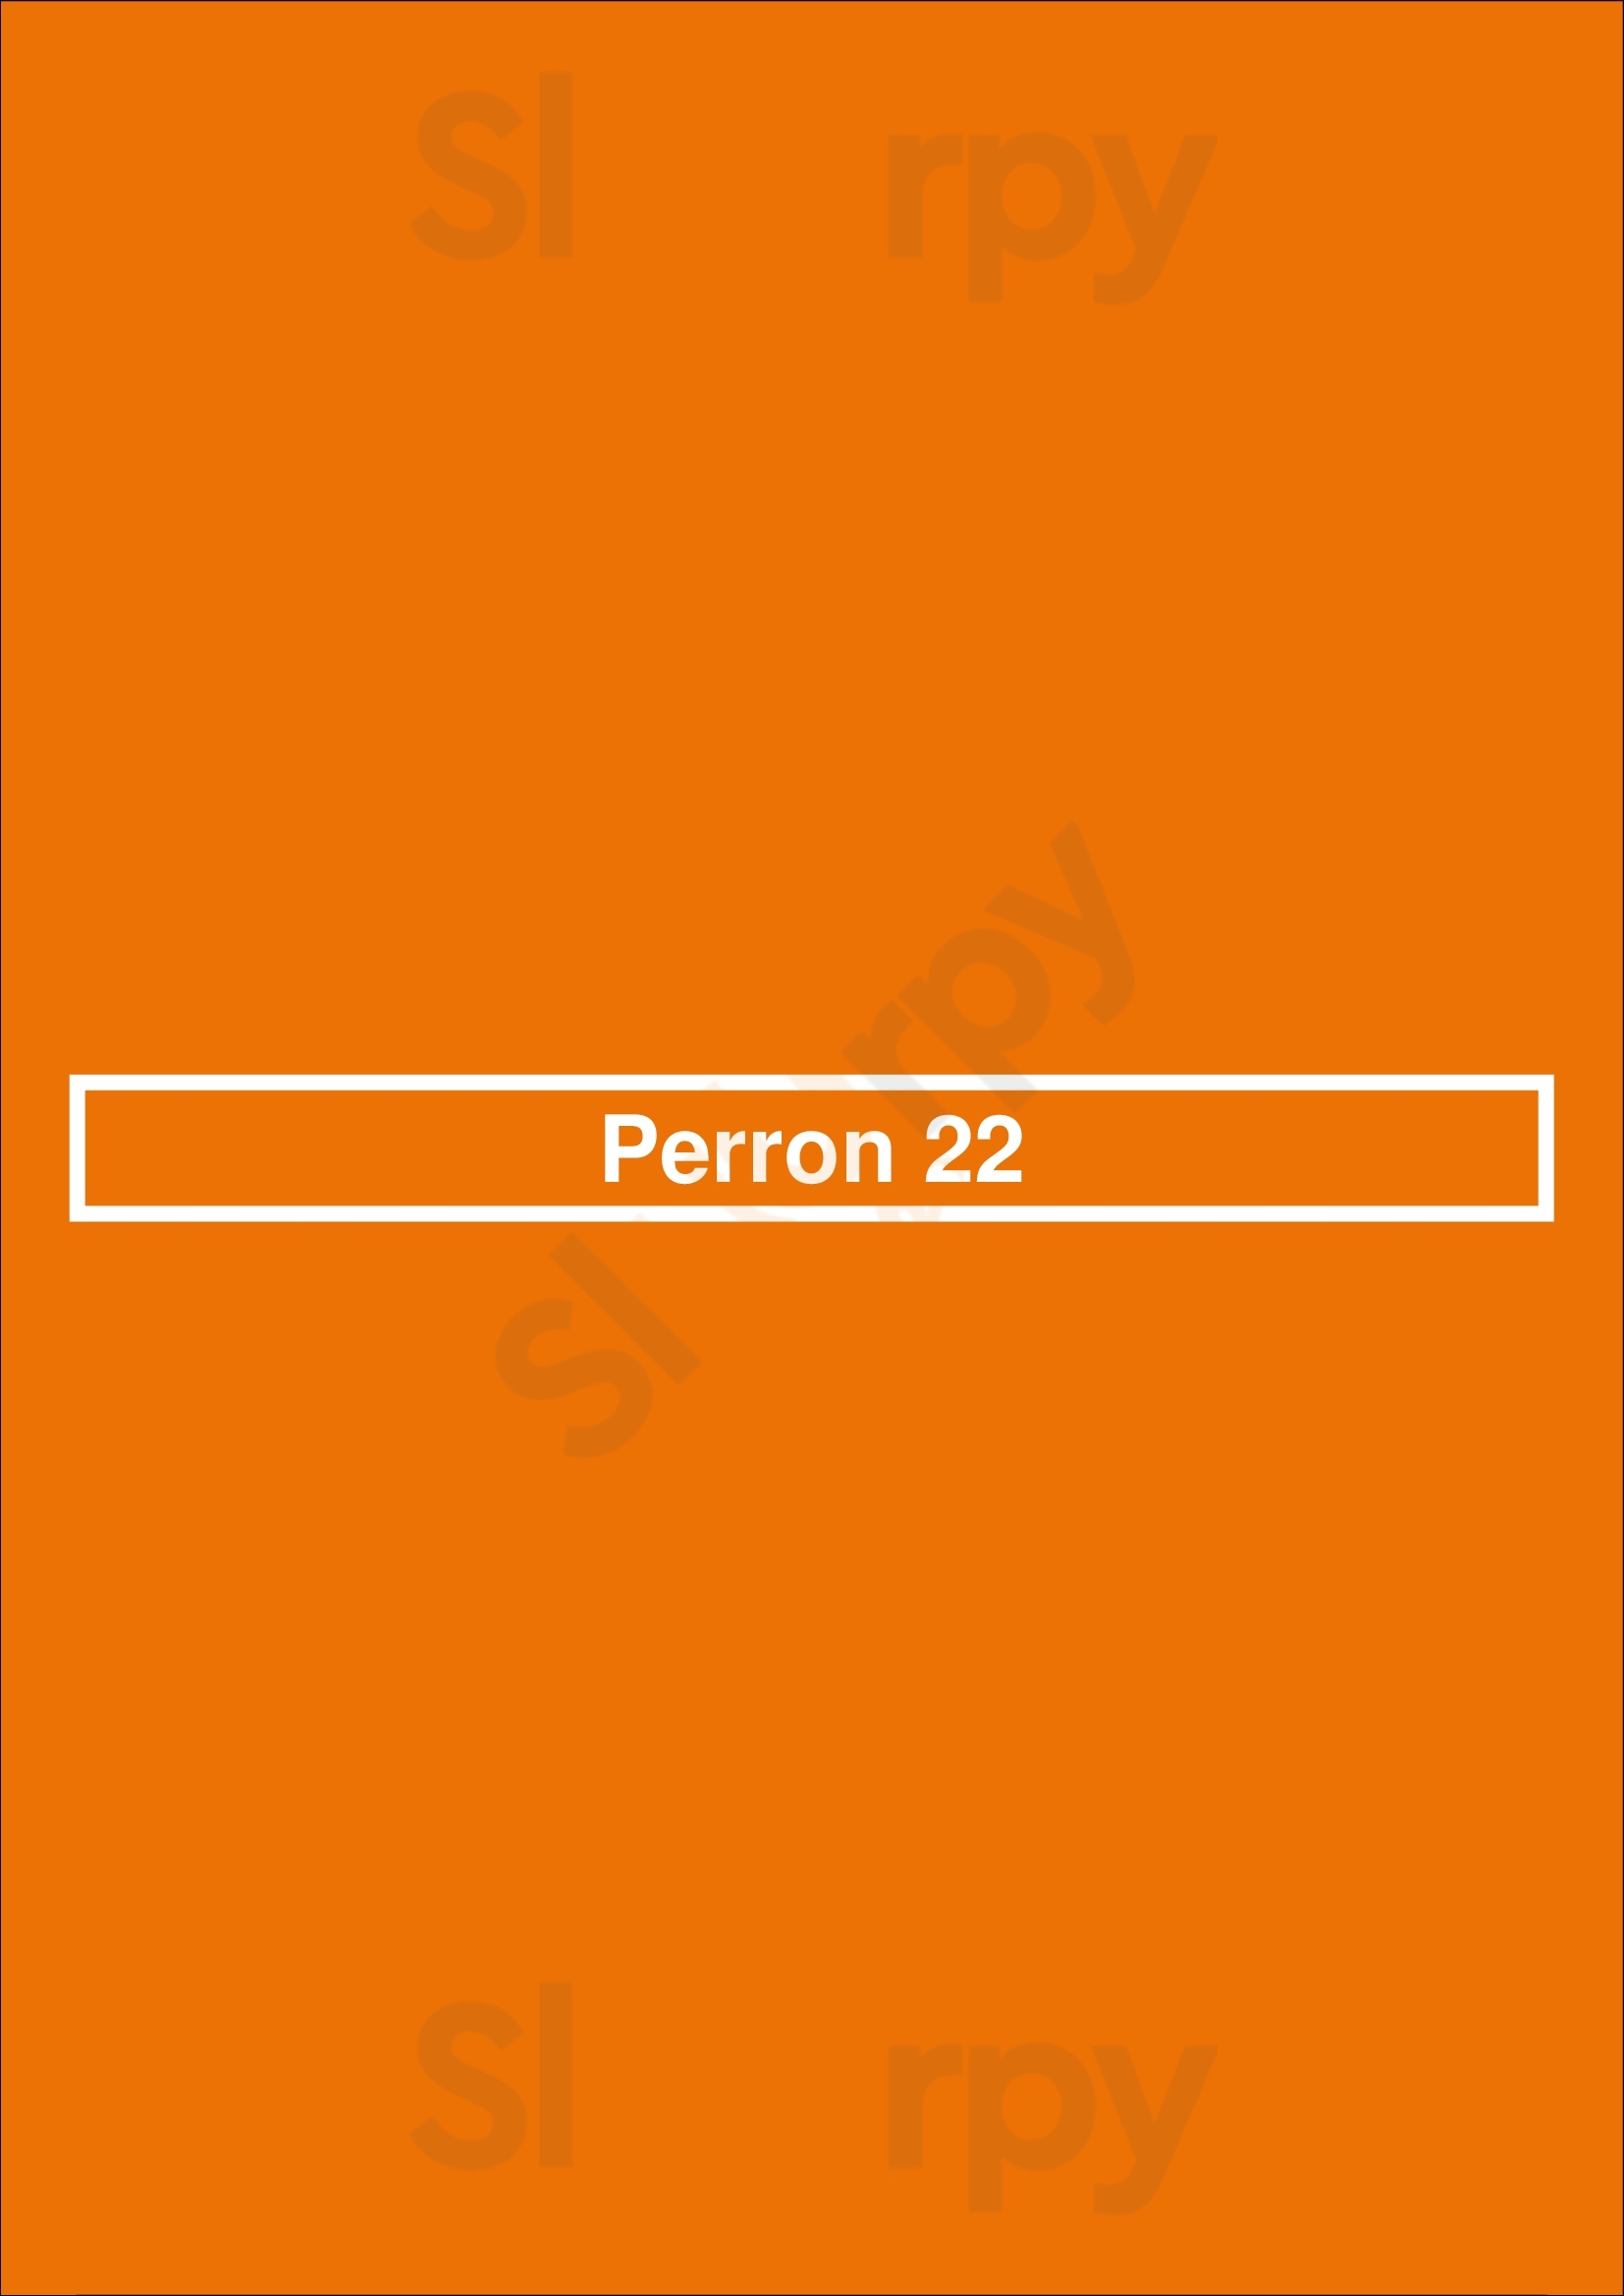 Perron 22 Enschede Menu - 1